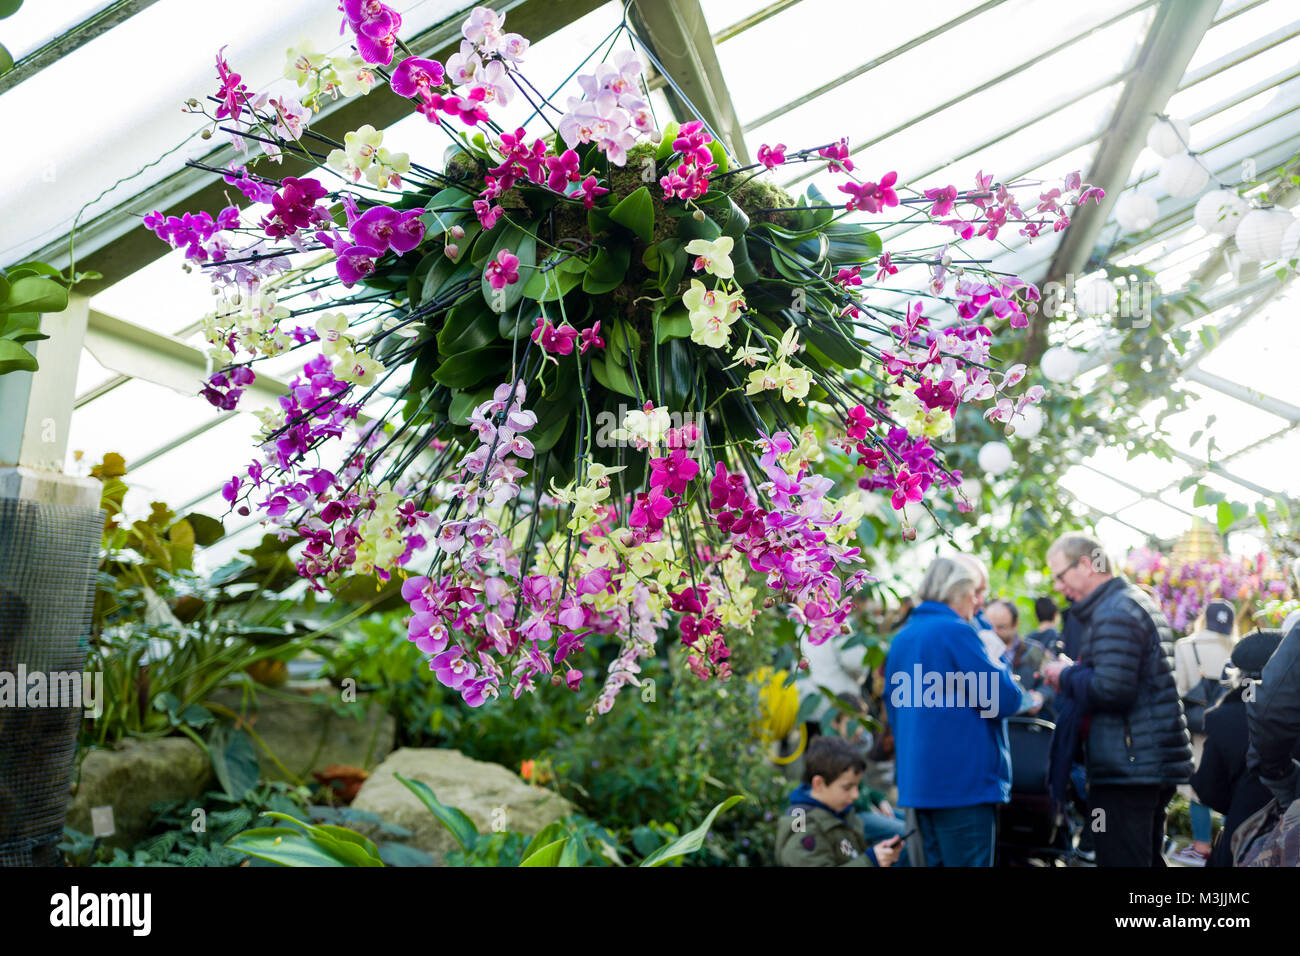 Febbraio 11, 2018 - Prima volta Kew annuale della stravaganza floreale è stato ispirato dalla Thailandia. Per quattro settimane, Kew Gardens accoglierà i visitatori per la sua 23 Orchidee annuale Festival con disegni creativi e le esperienze uniche. Credito: Velar concedere/ZUMA filo/Alamy Live News Foto Stock